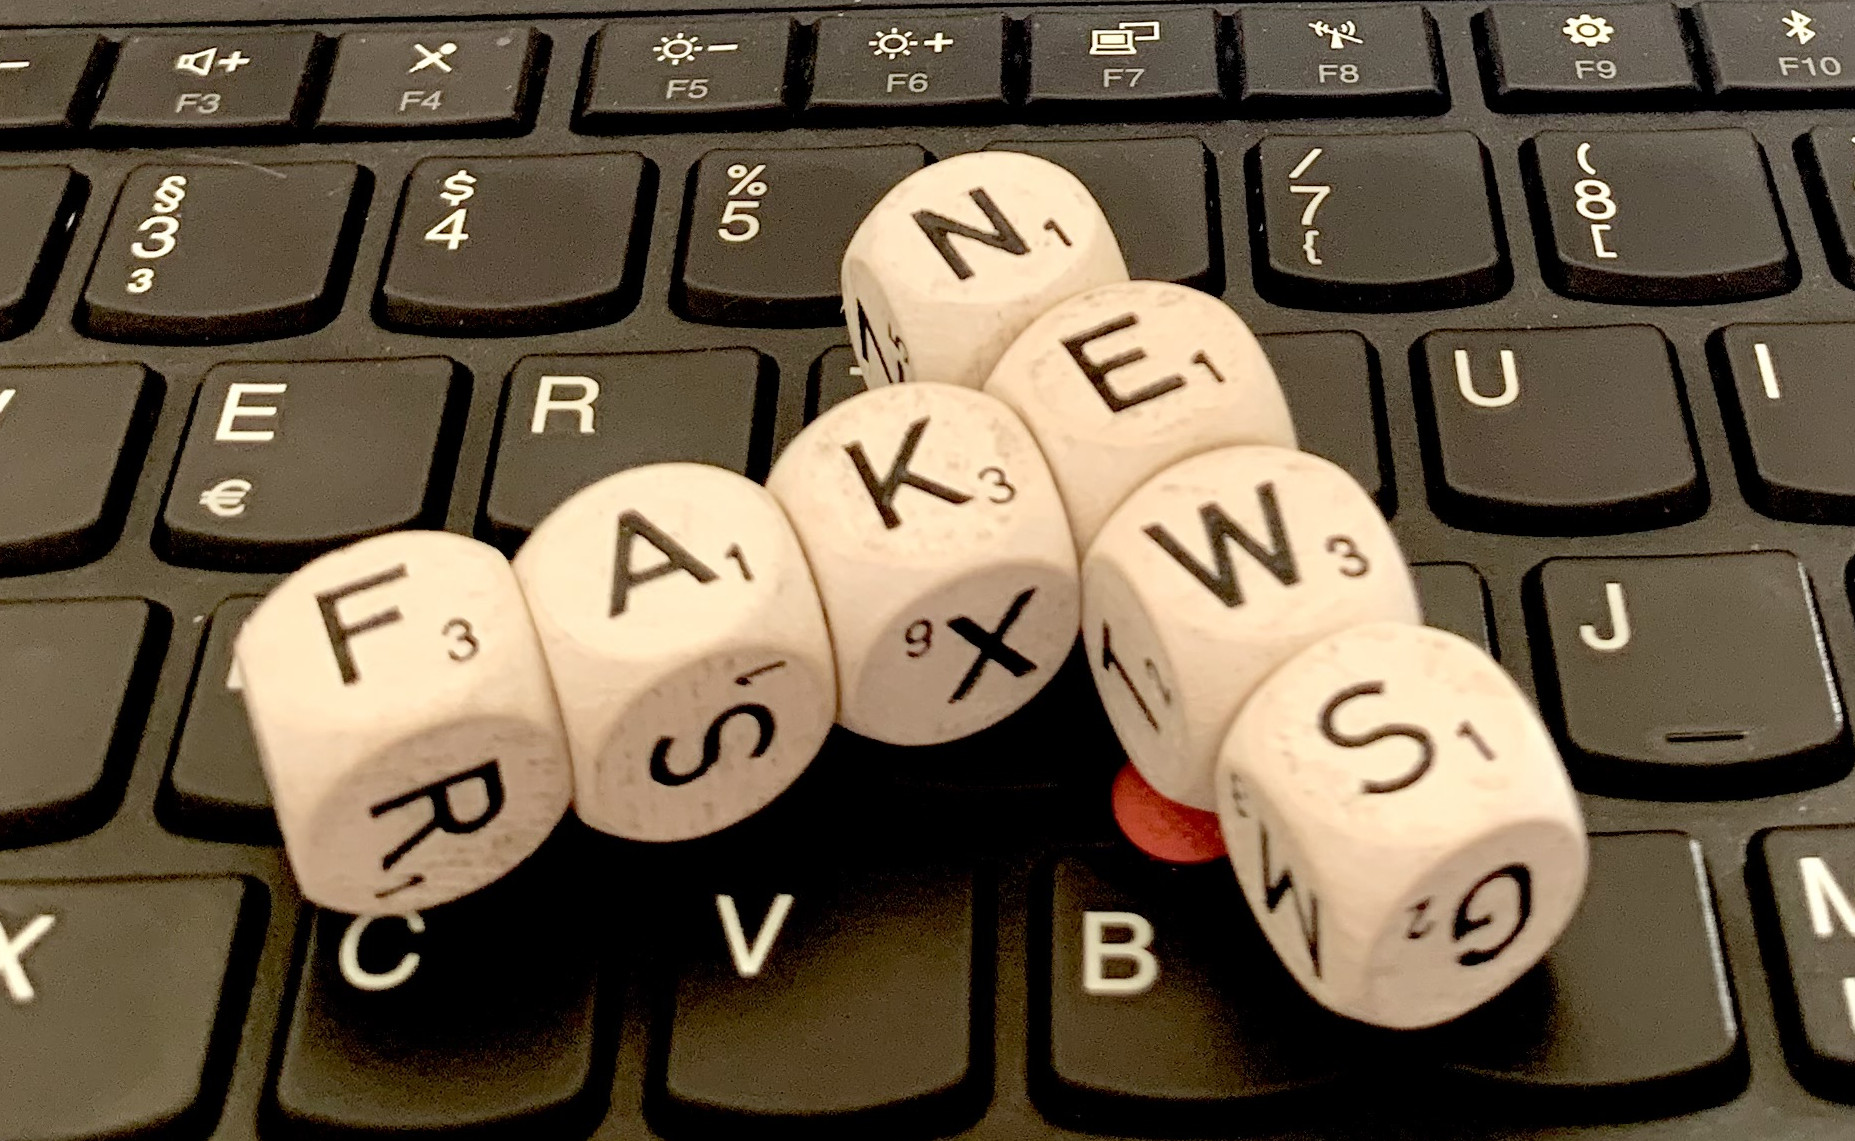 Foto: Scrabble-Steine, die die Wörter FAKE NEWS bilden, auf einer Computertastatur